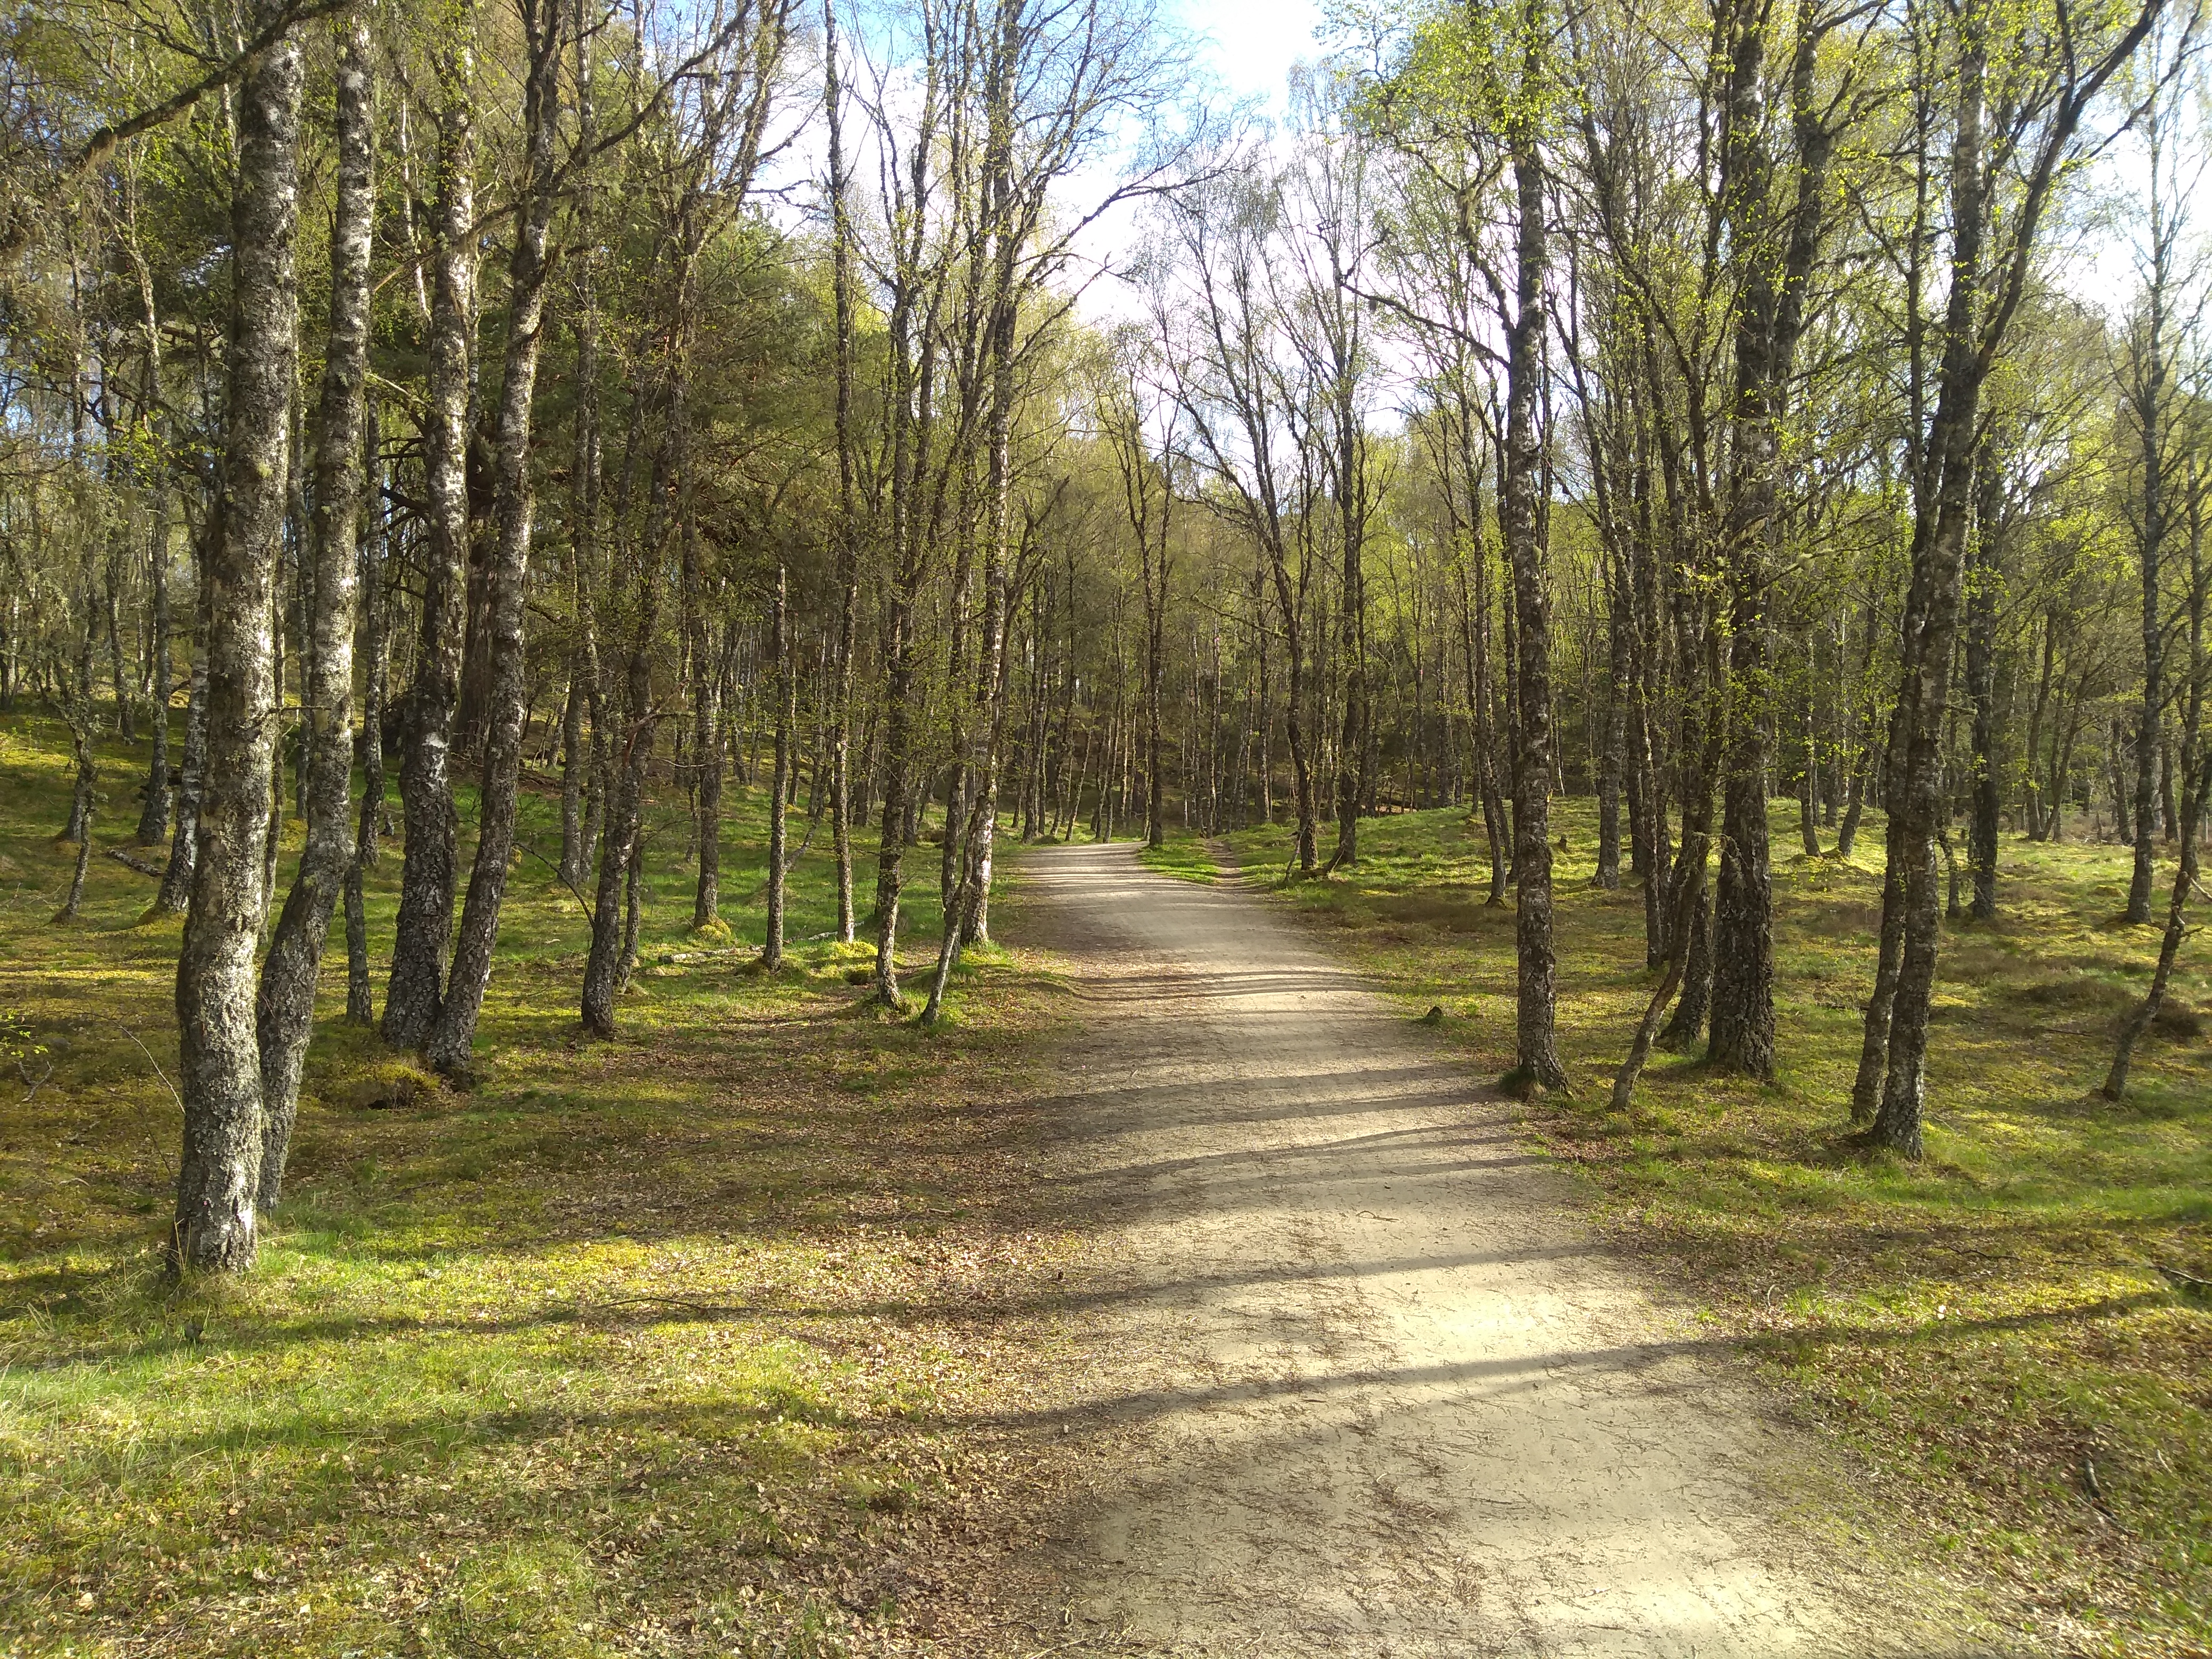 Bike path through woodland